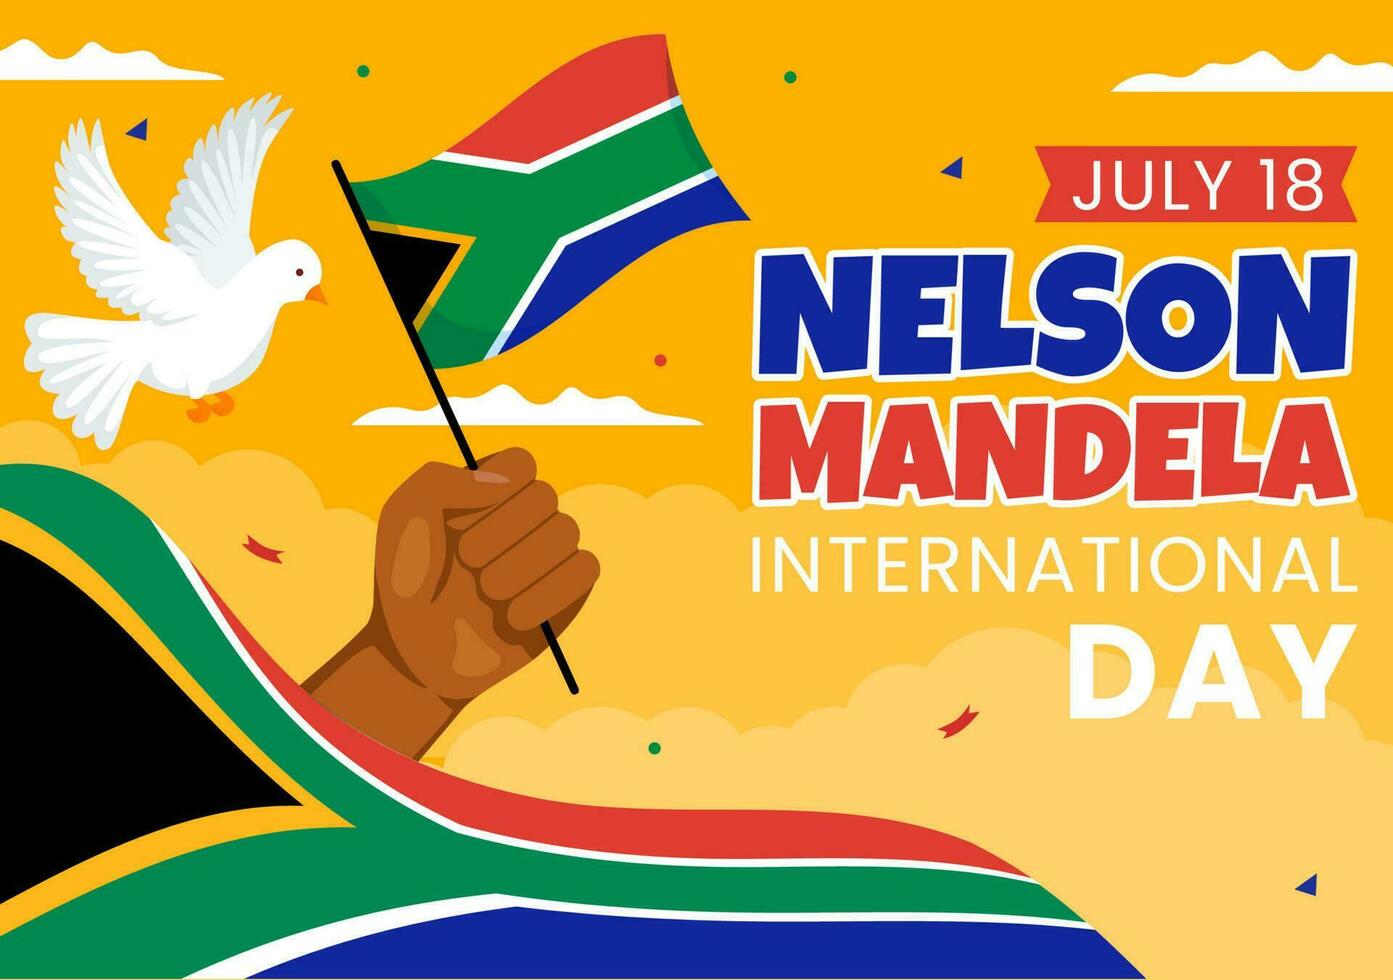 contento nelson mandela internacional día vector ilustración en 18 julio con sur África bandera en plano dibujos animados mano dibujado aterrizaje página plantillas